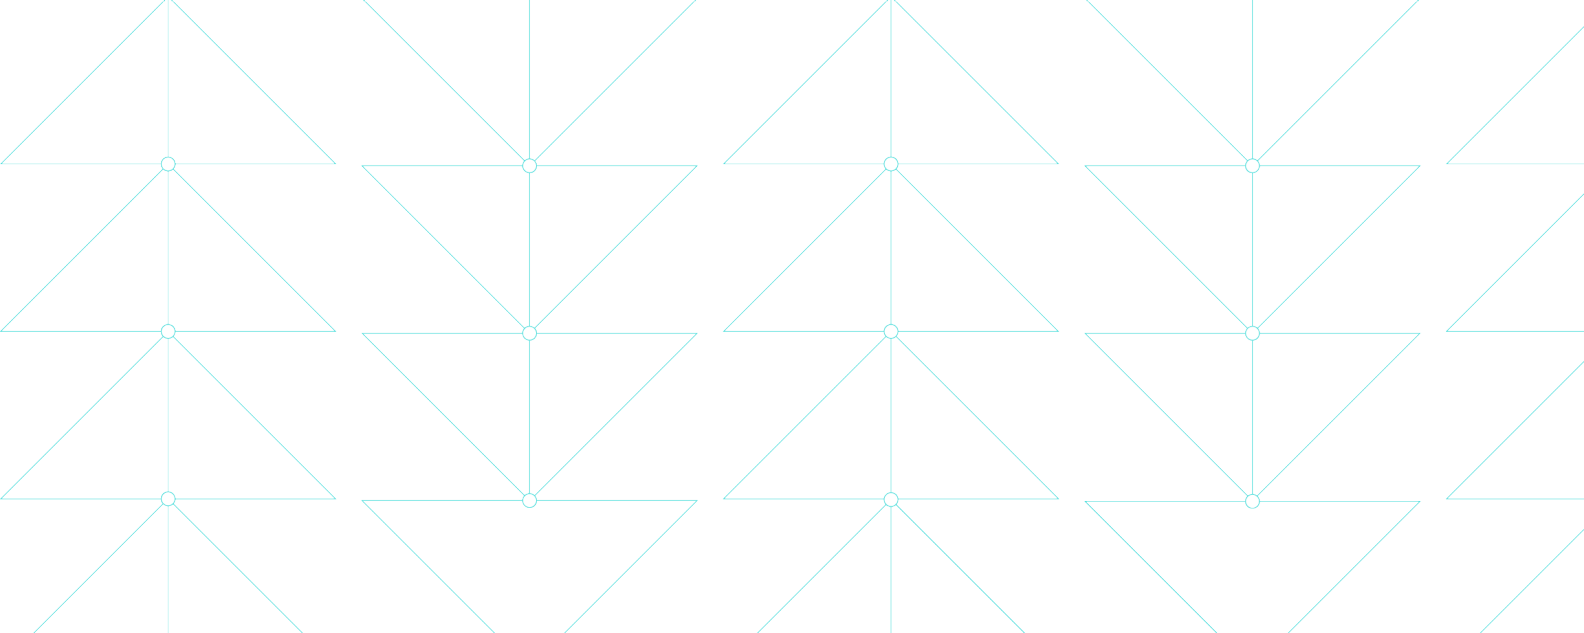 Abbildung mit dünnen blauen Linien, die filigrane dreieckige Muster bilden